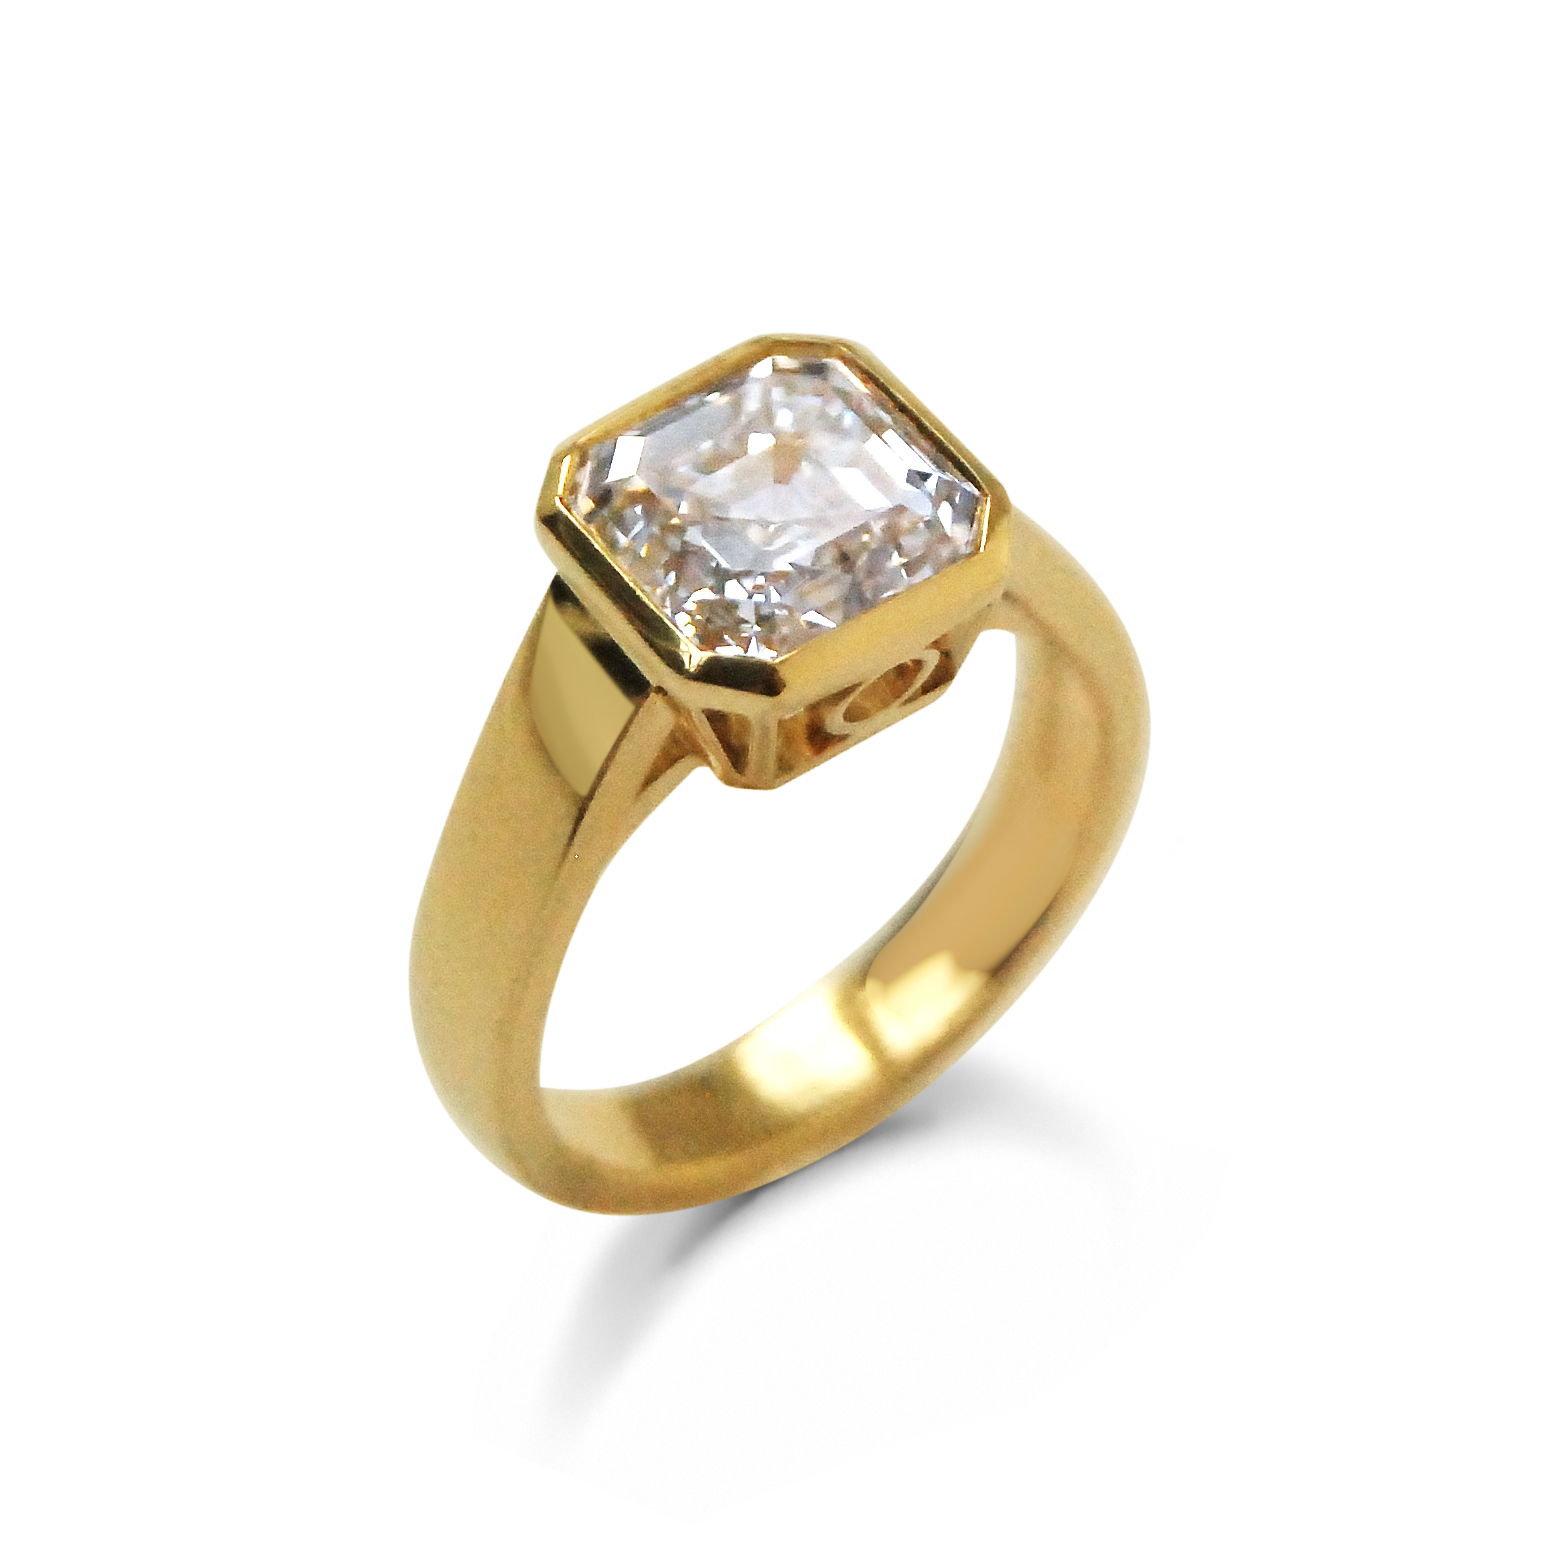 Asscher-cut-diamond-and-yellow-gold-ring-2.jpg